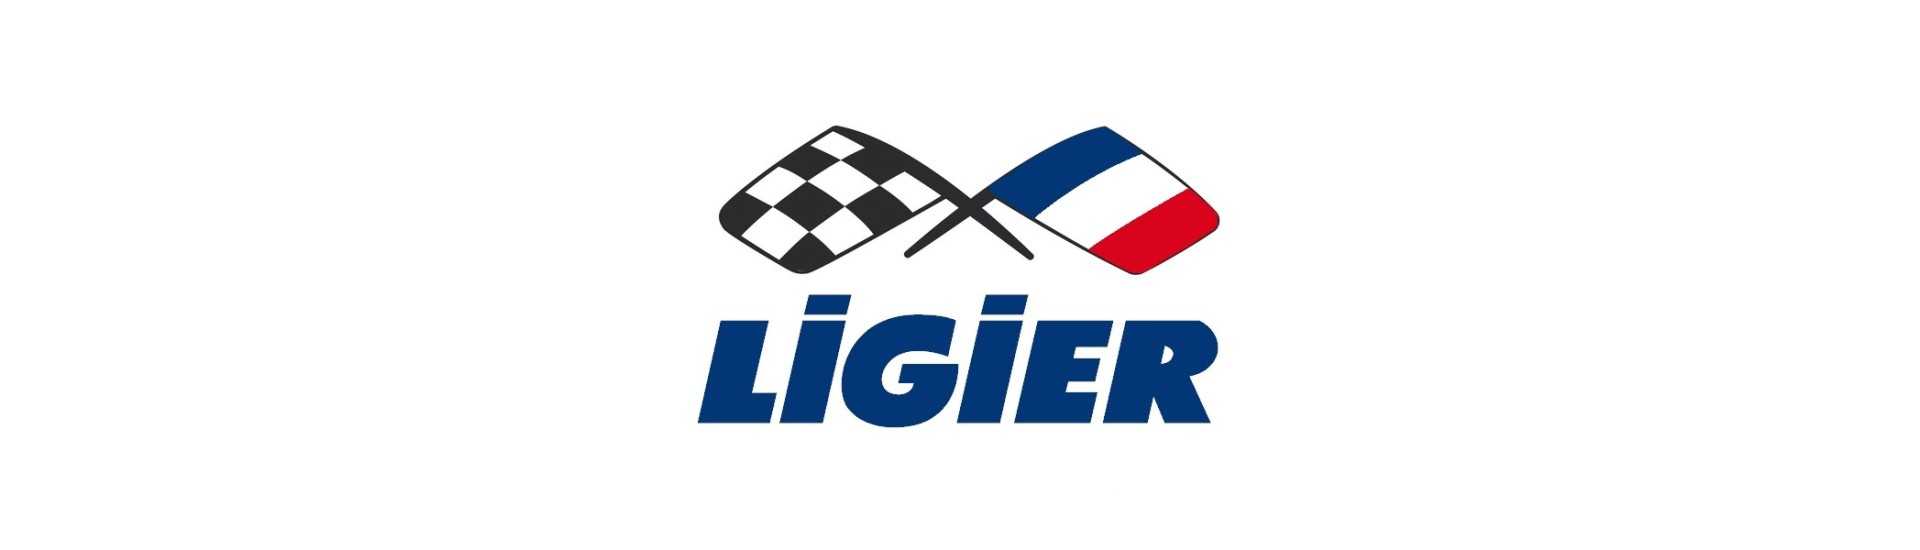 Routen zum besten Preis für Auto ohne Lizenz Ligier